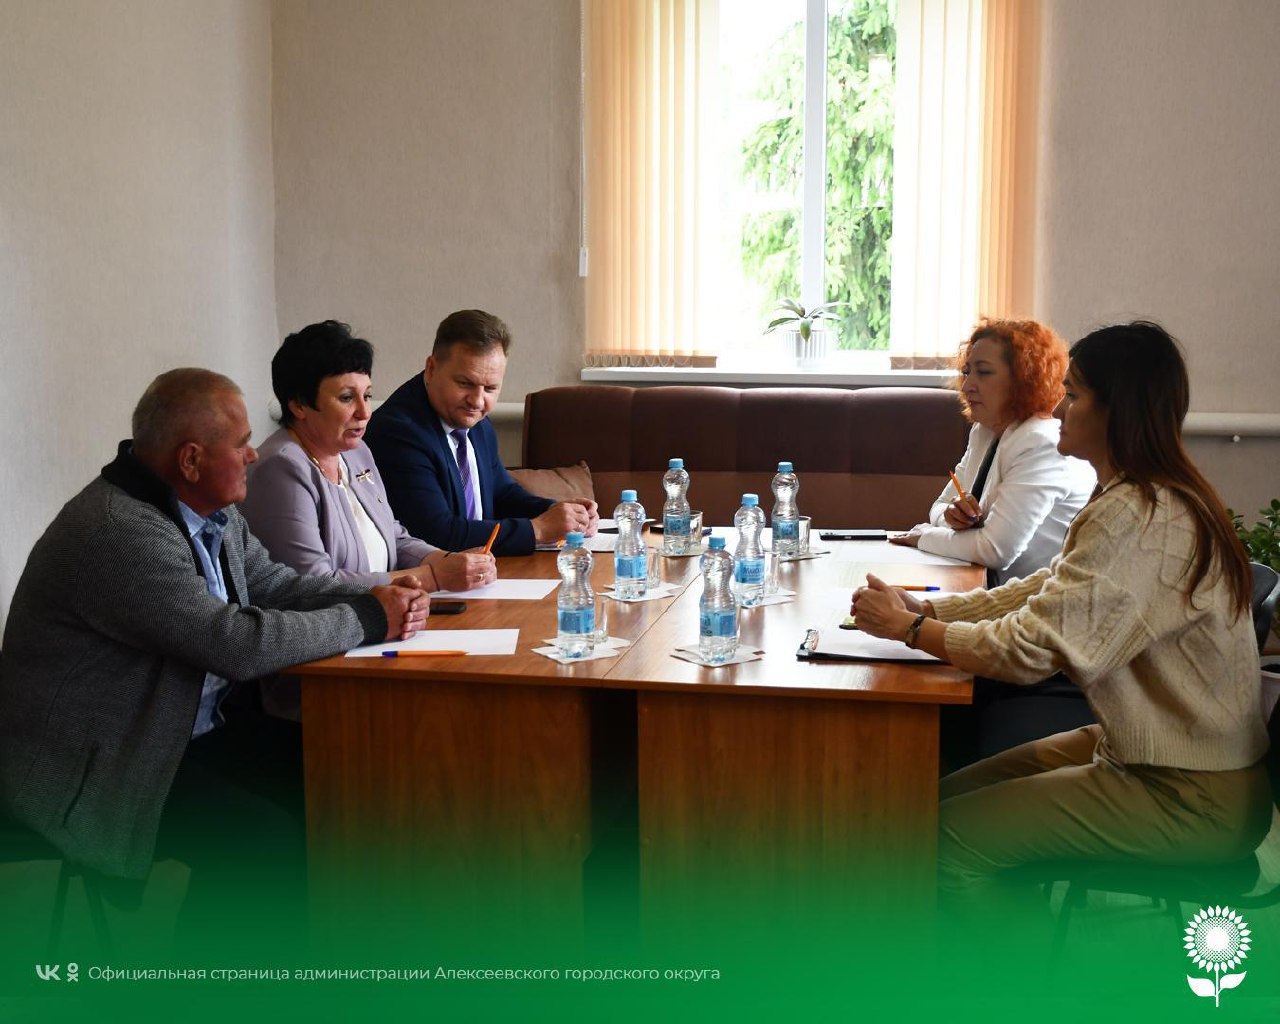 Встреча первого заместителя главы администрации Алексеевского городского округа по АПК и имуществу Алексея Фёдоровича Горбатенко с представителями НКО.